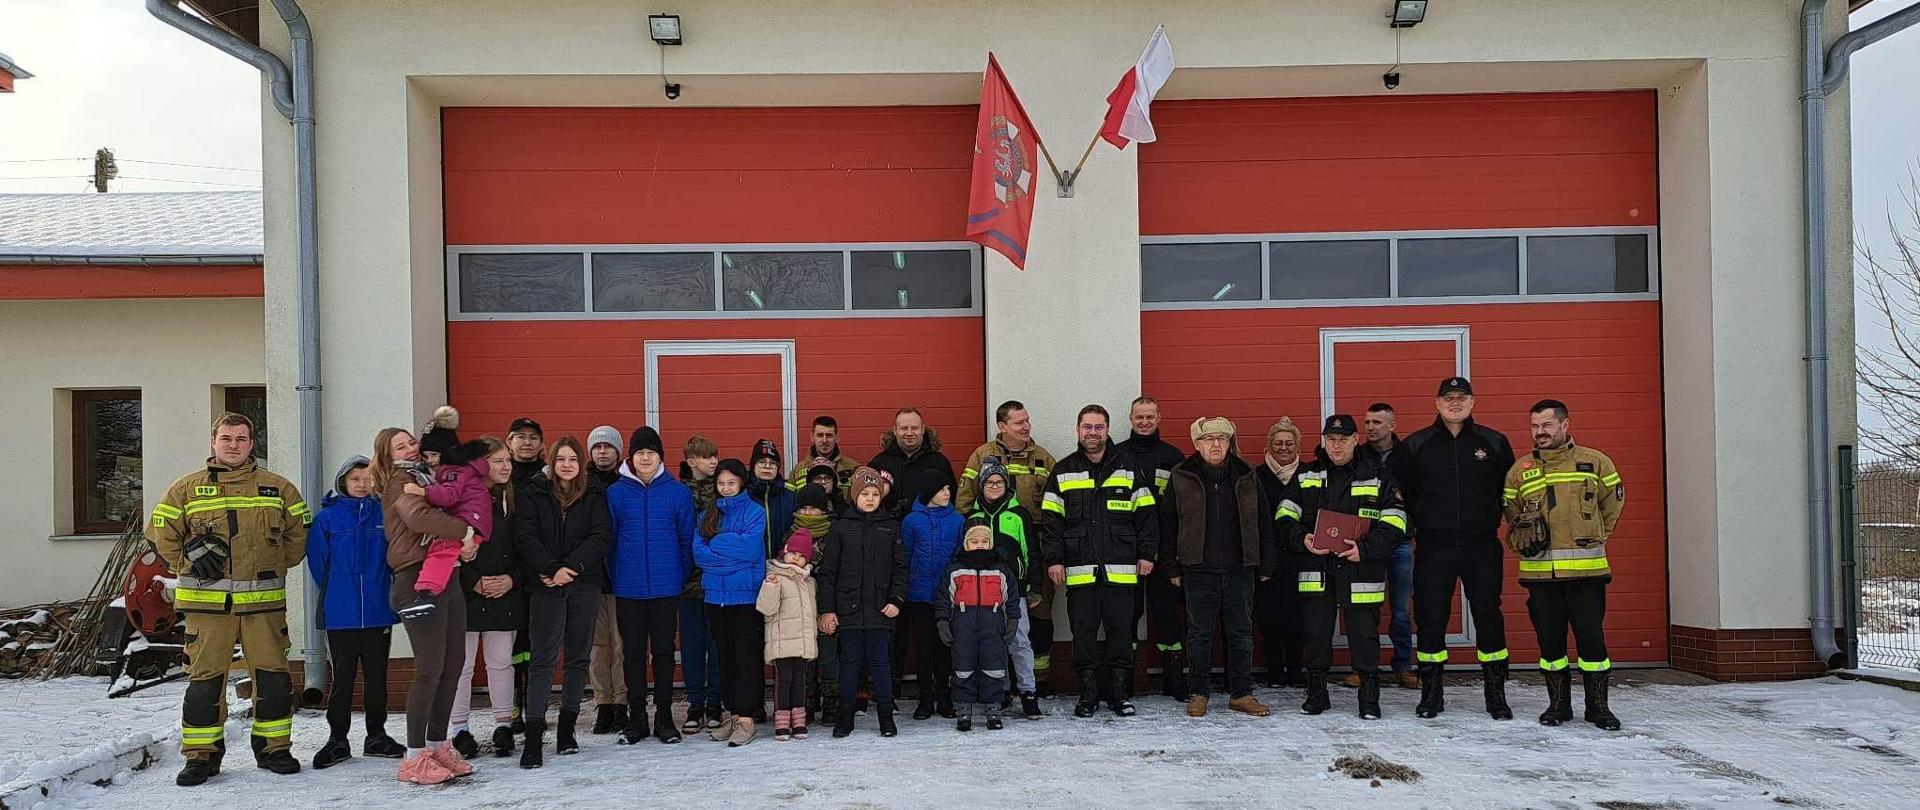 Na tle remizy OSP z dużymi czerwonymi drzwiami stoi grupa strażaków w mundurach oraz dzieci. Zima, biało od śniegu.